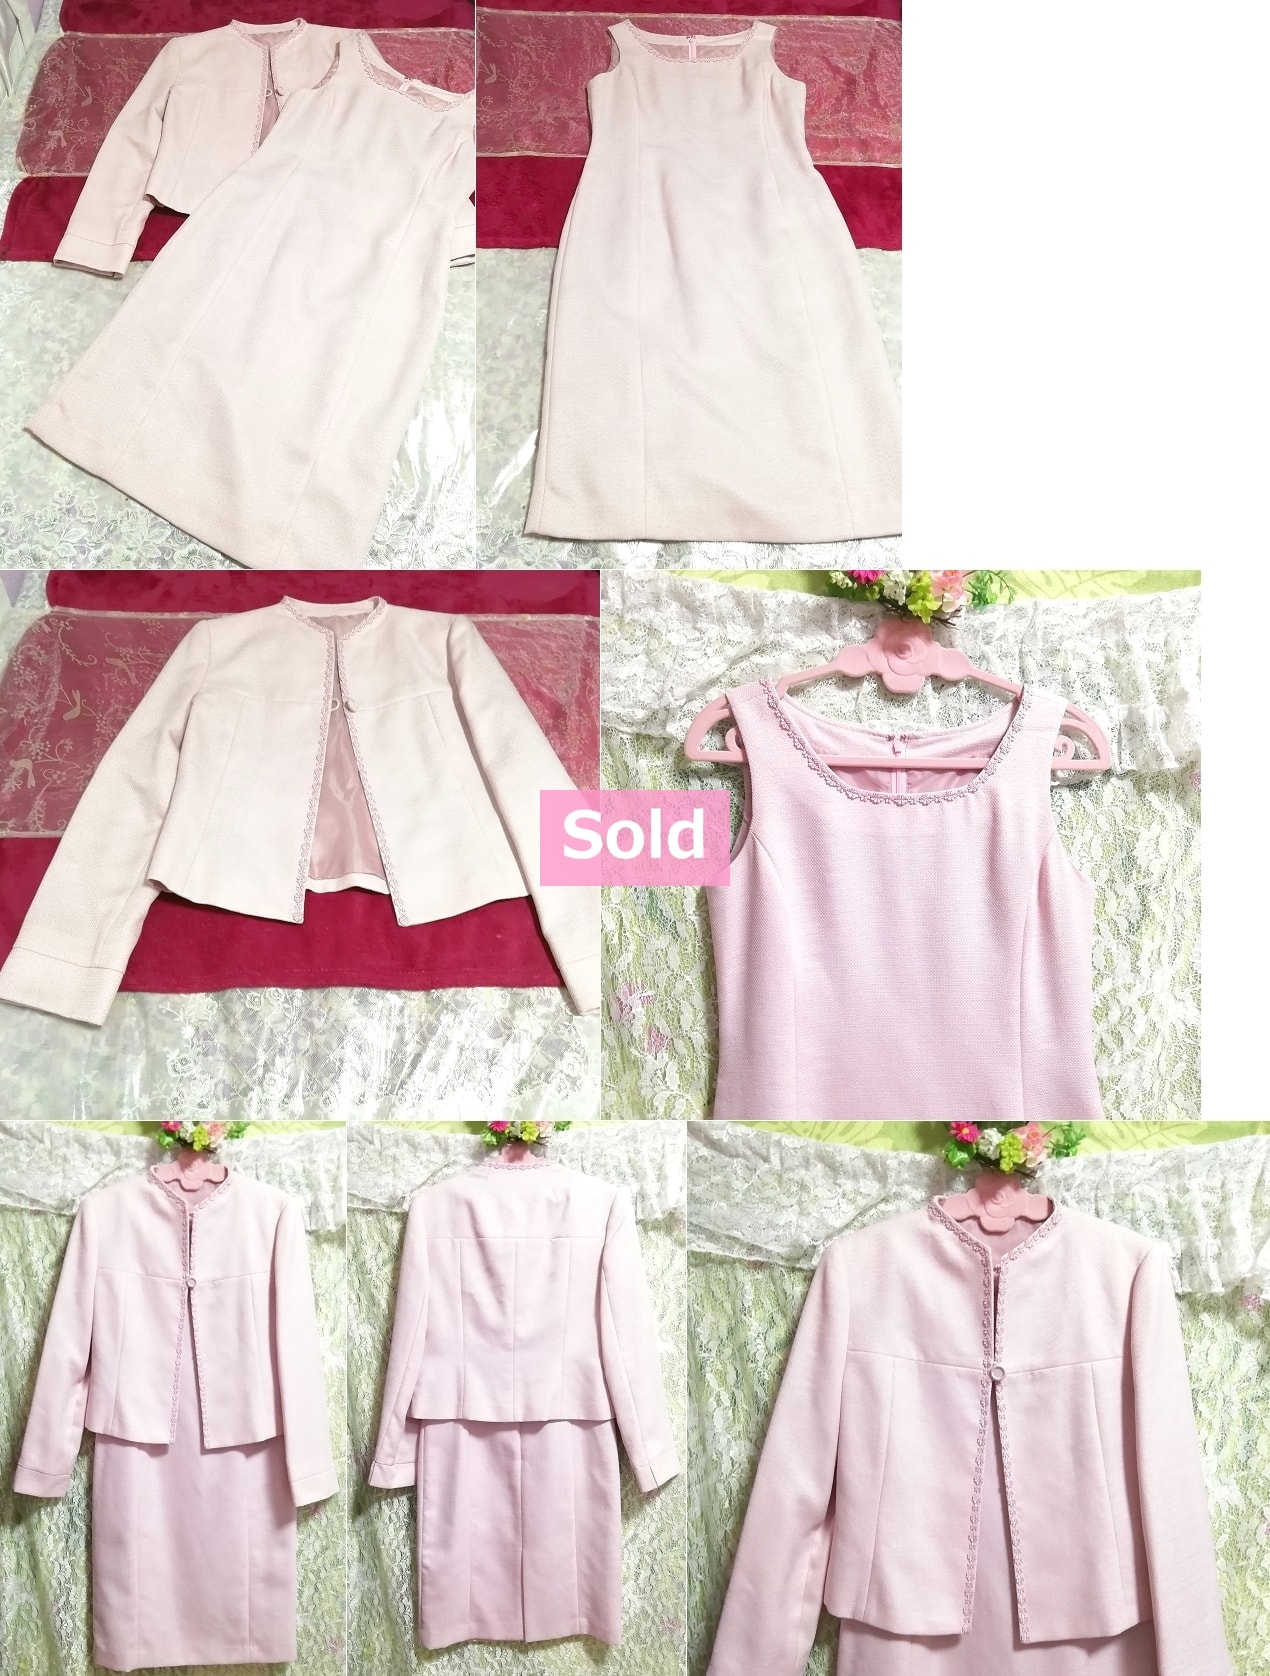 गुलाबी जैकेट बिना आस्तीन का एक टुकड़ा दो टुकड़ा सूट सेट गुलाबी जैकेट बिना आस्तीन का एक टुकड़ा दो टुकड़ा सूट सेट